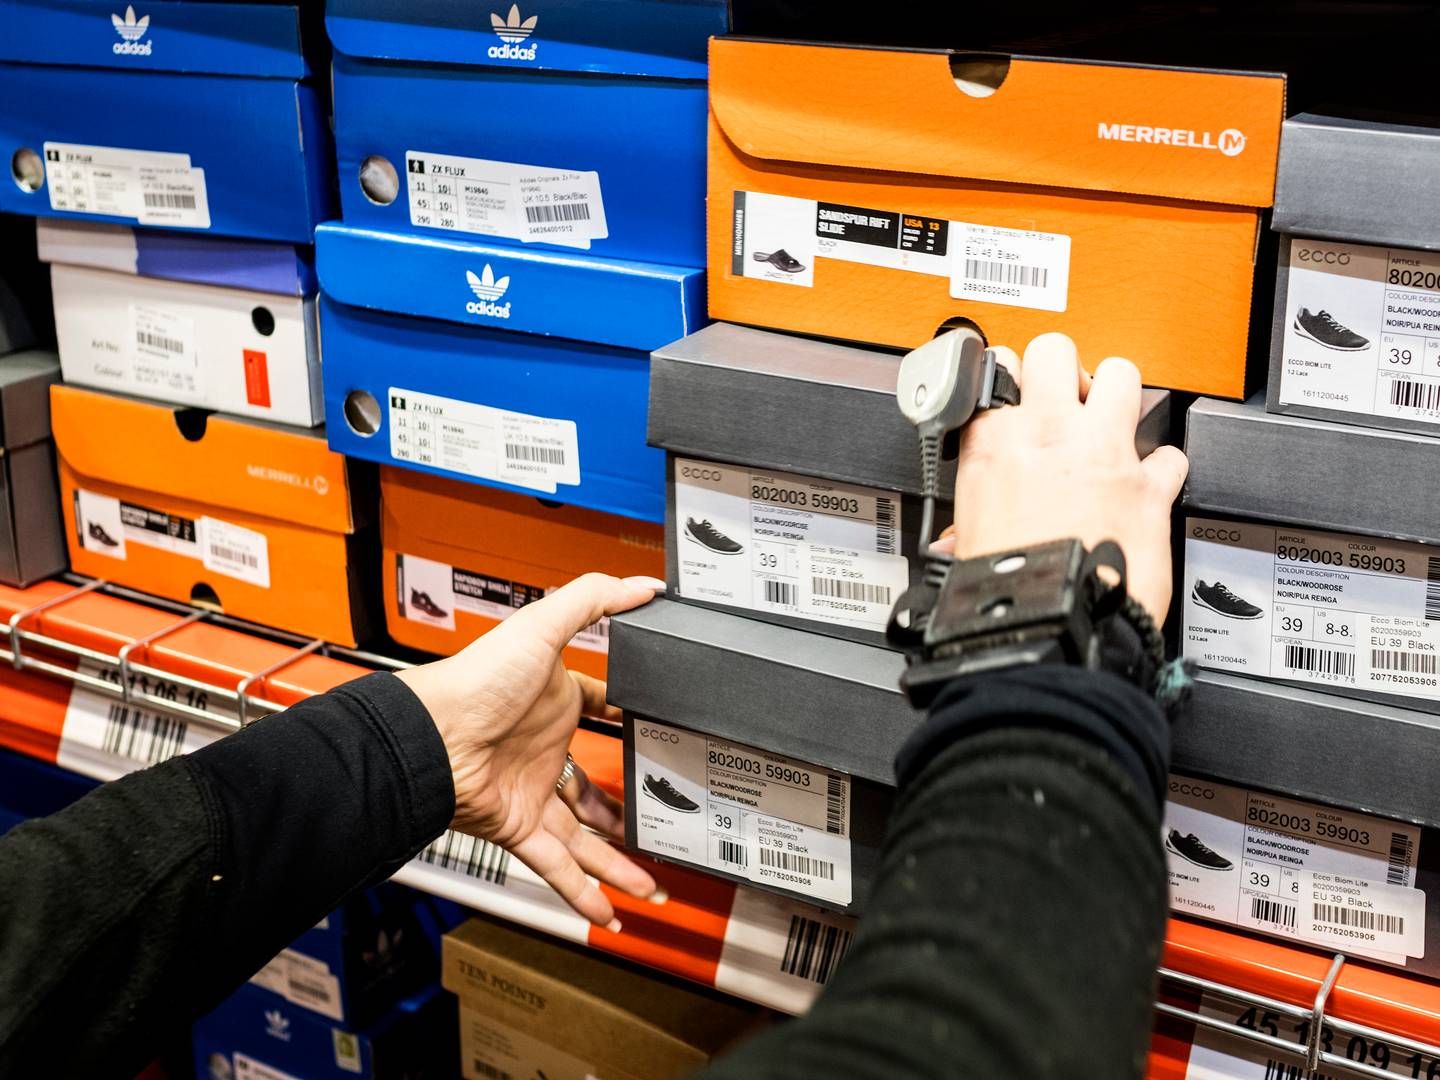 Køb af tøj og sko er højdespringer, når det gælder onlinehandel blandt danskerne. (Arkivfoto) | Foto: Ivan Boll